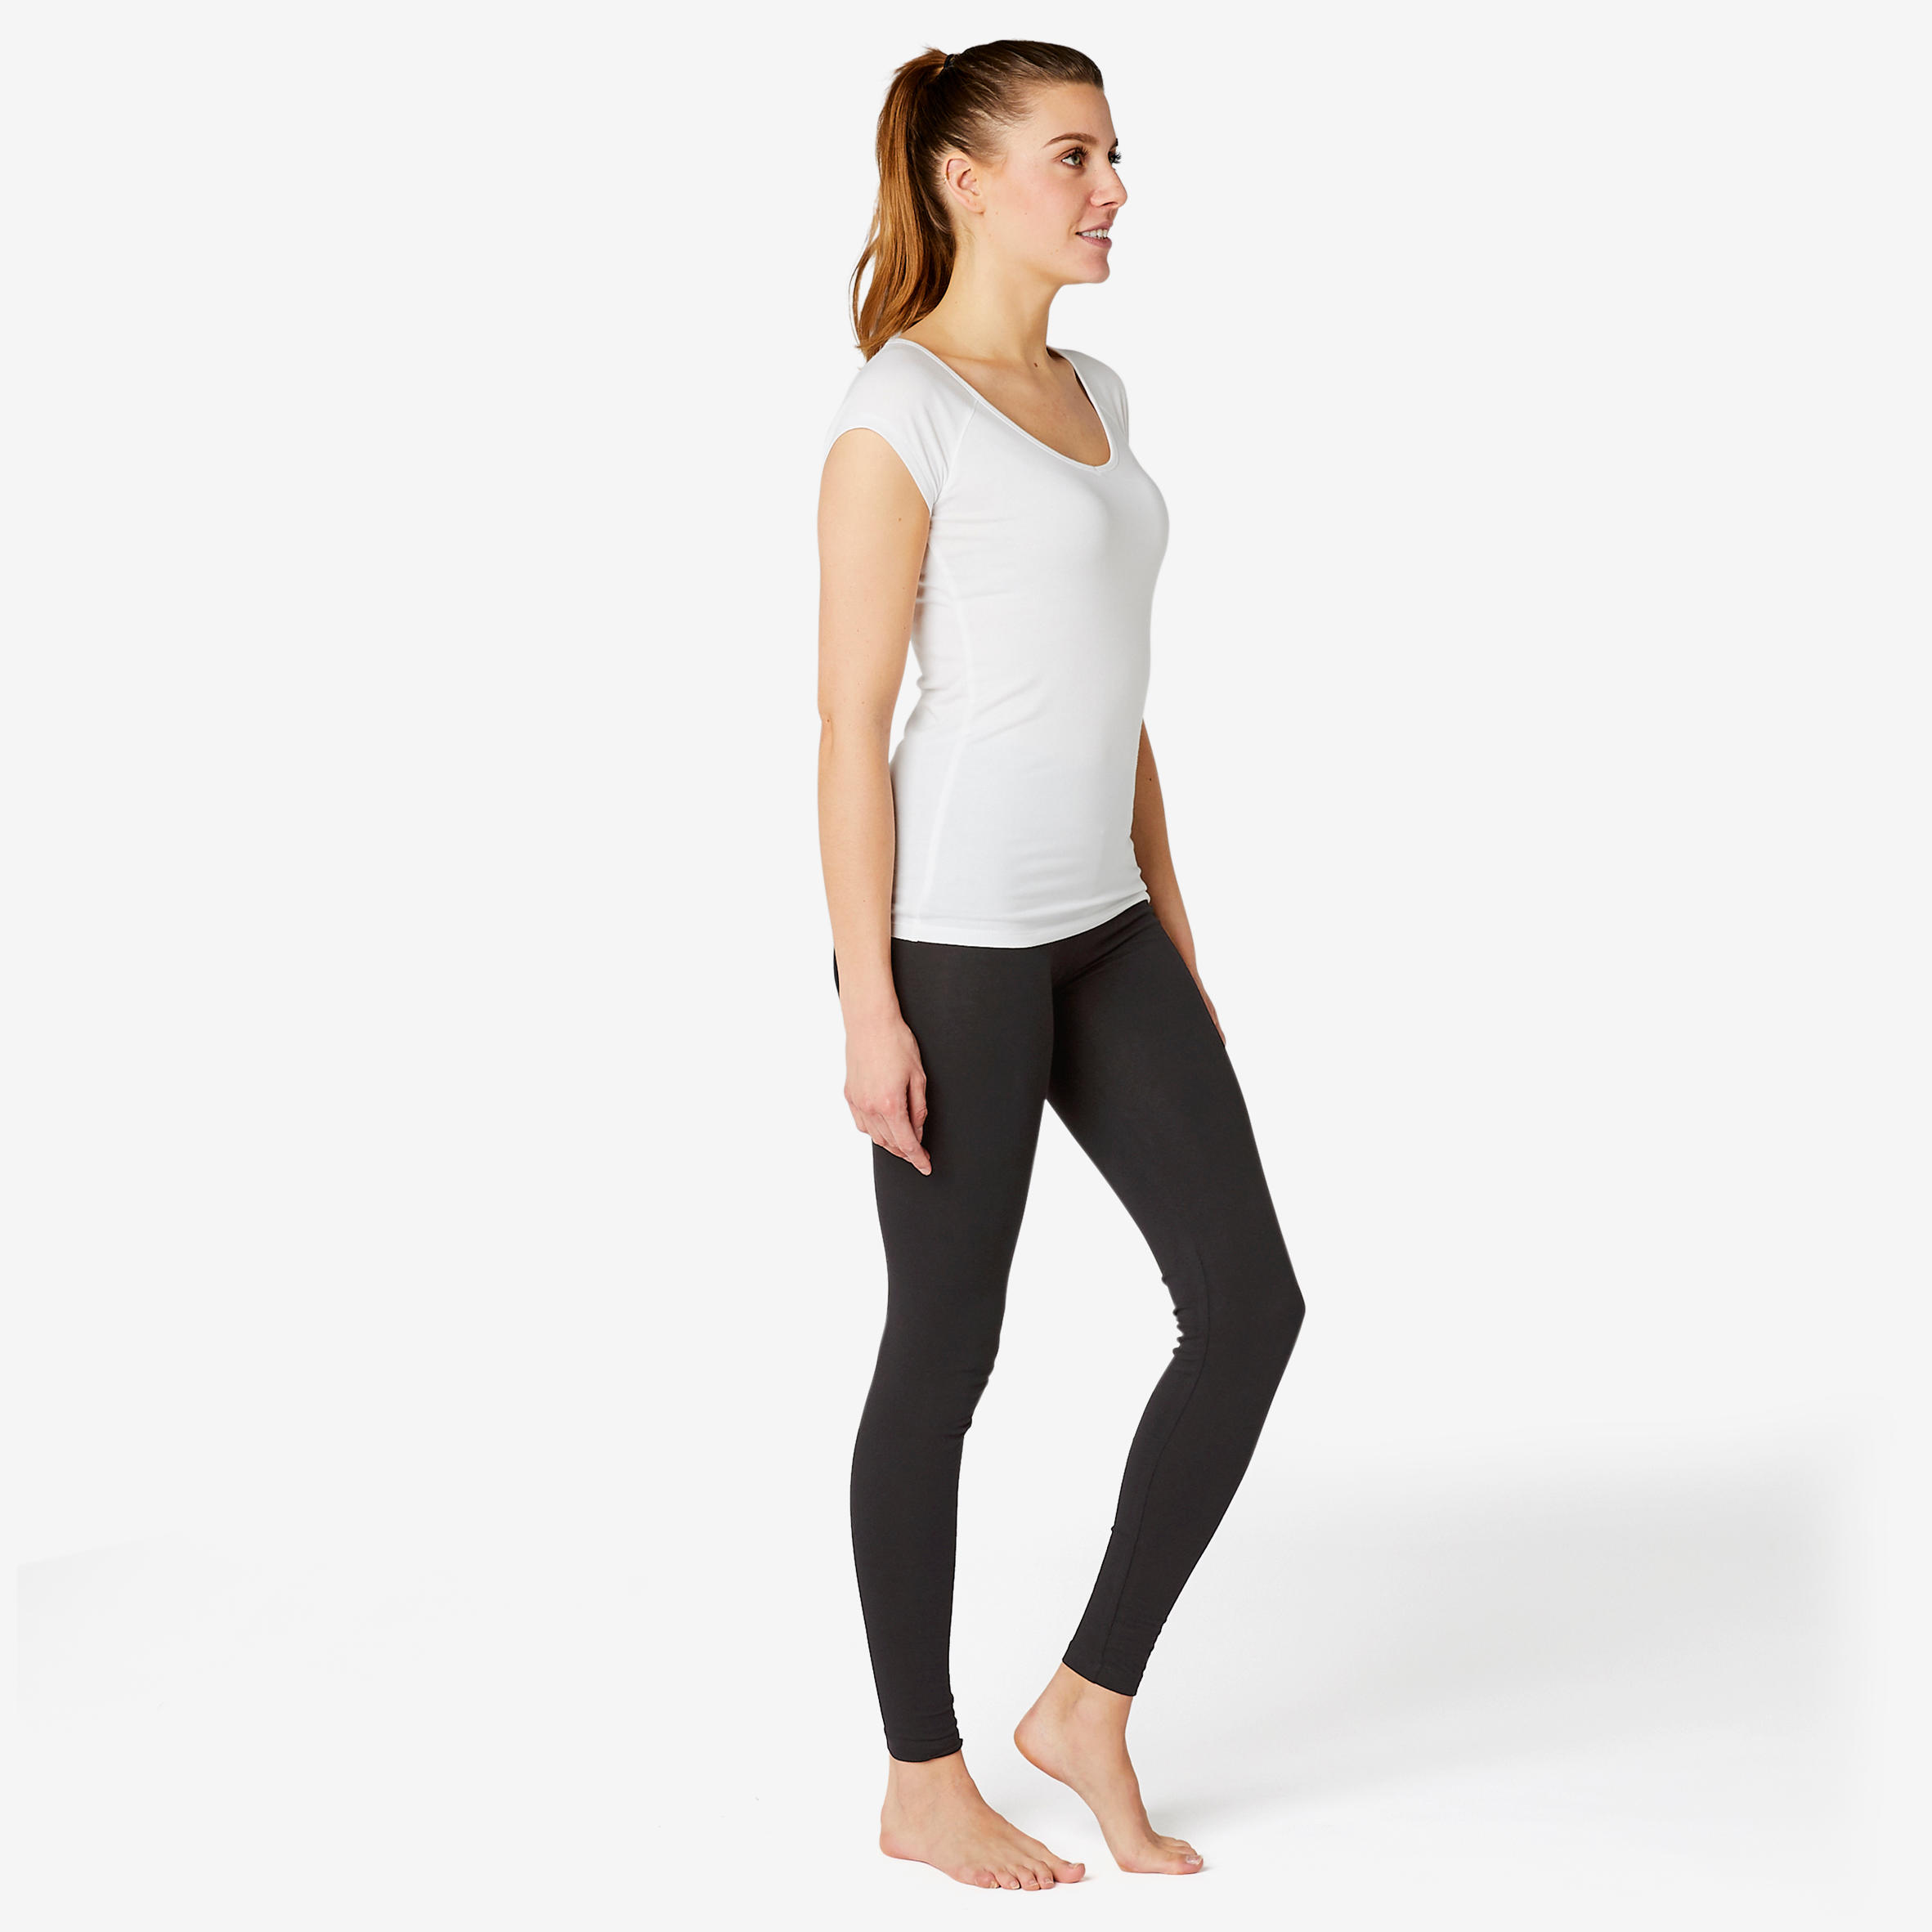 Black capri sports leggings from Decathlon | Sports leggings, Gym shorts  womens, Fashion